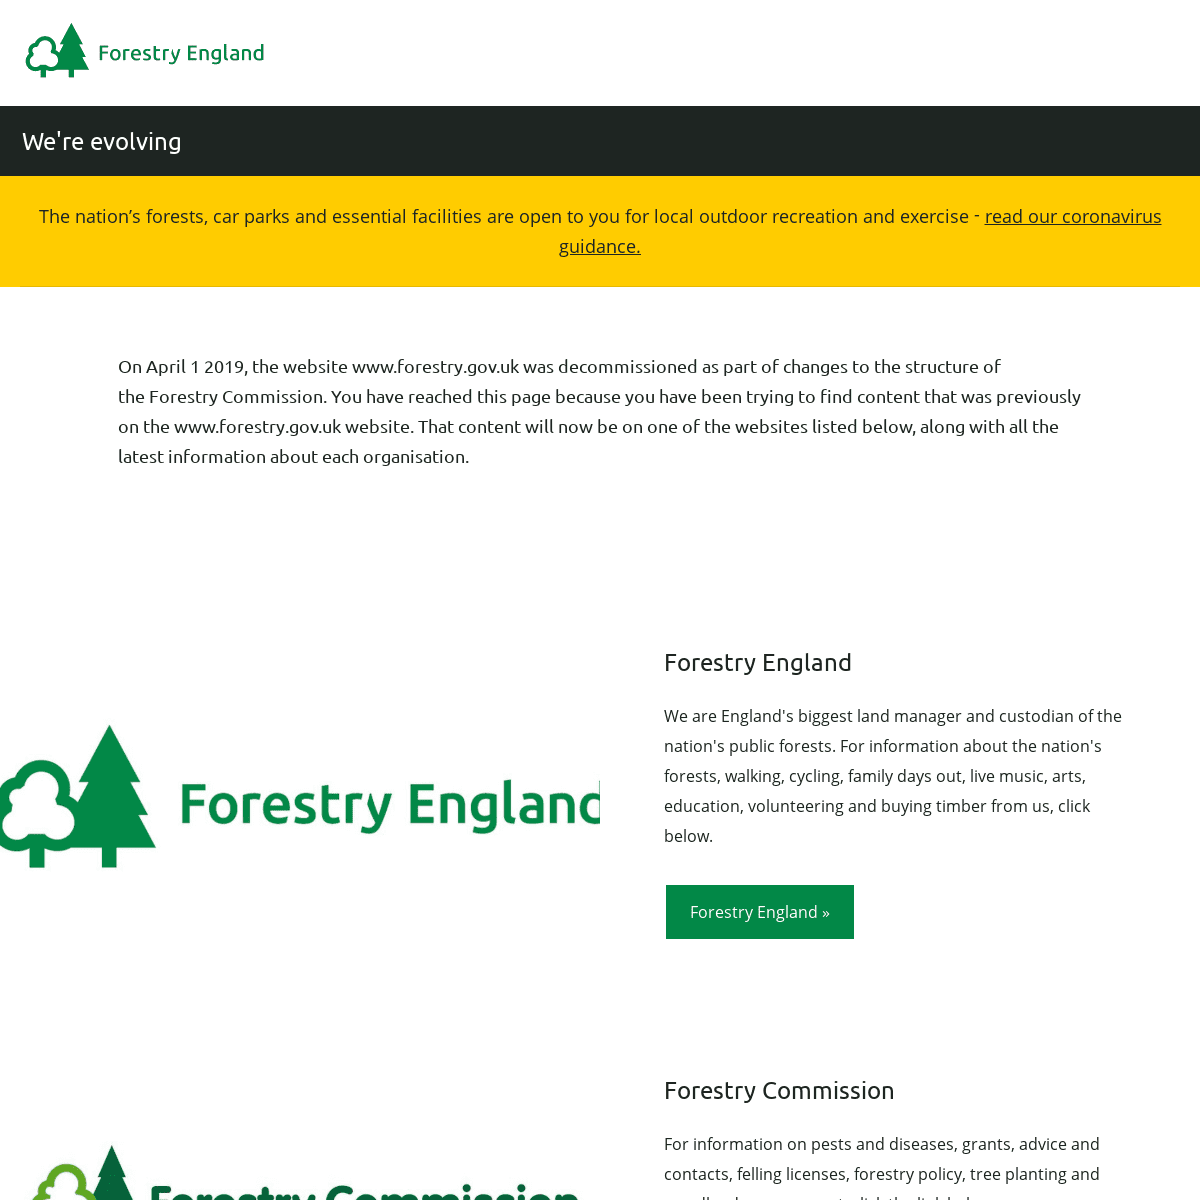 A complete backup of forestry.gov.uk